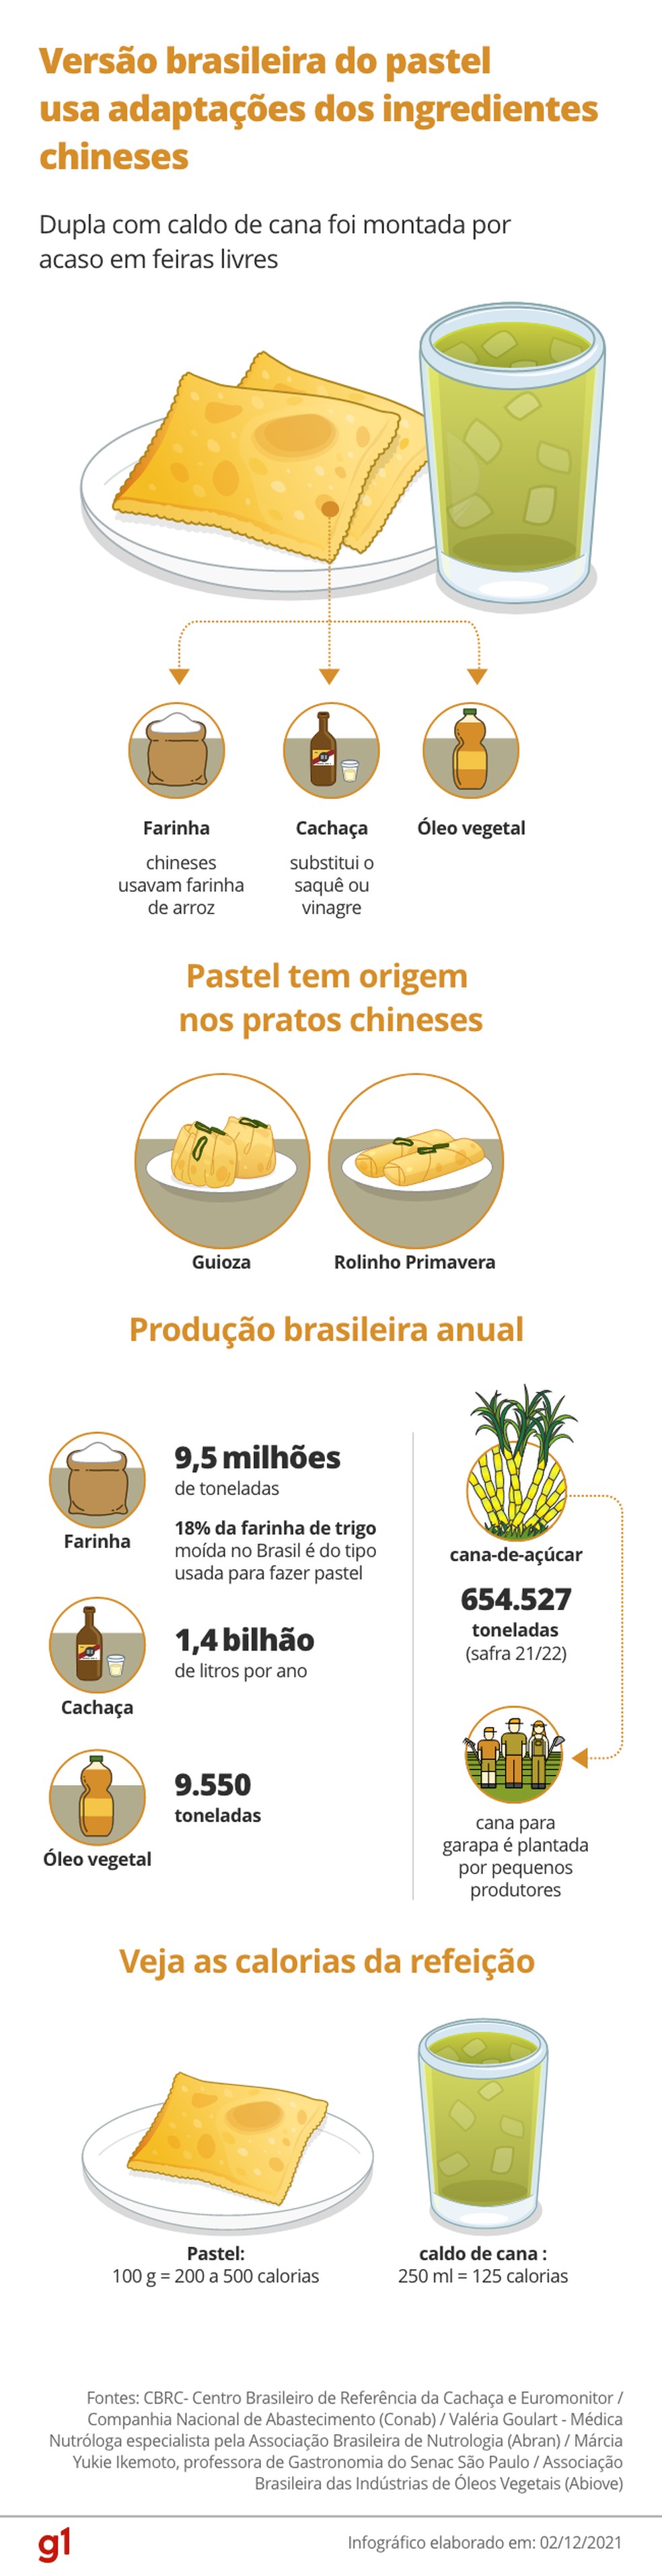 Versão brasileira do pastel usa adaptação dos ingredientes chineses. — Foto: Arte / g1